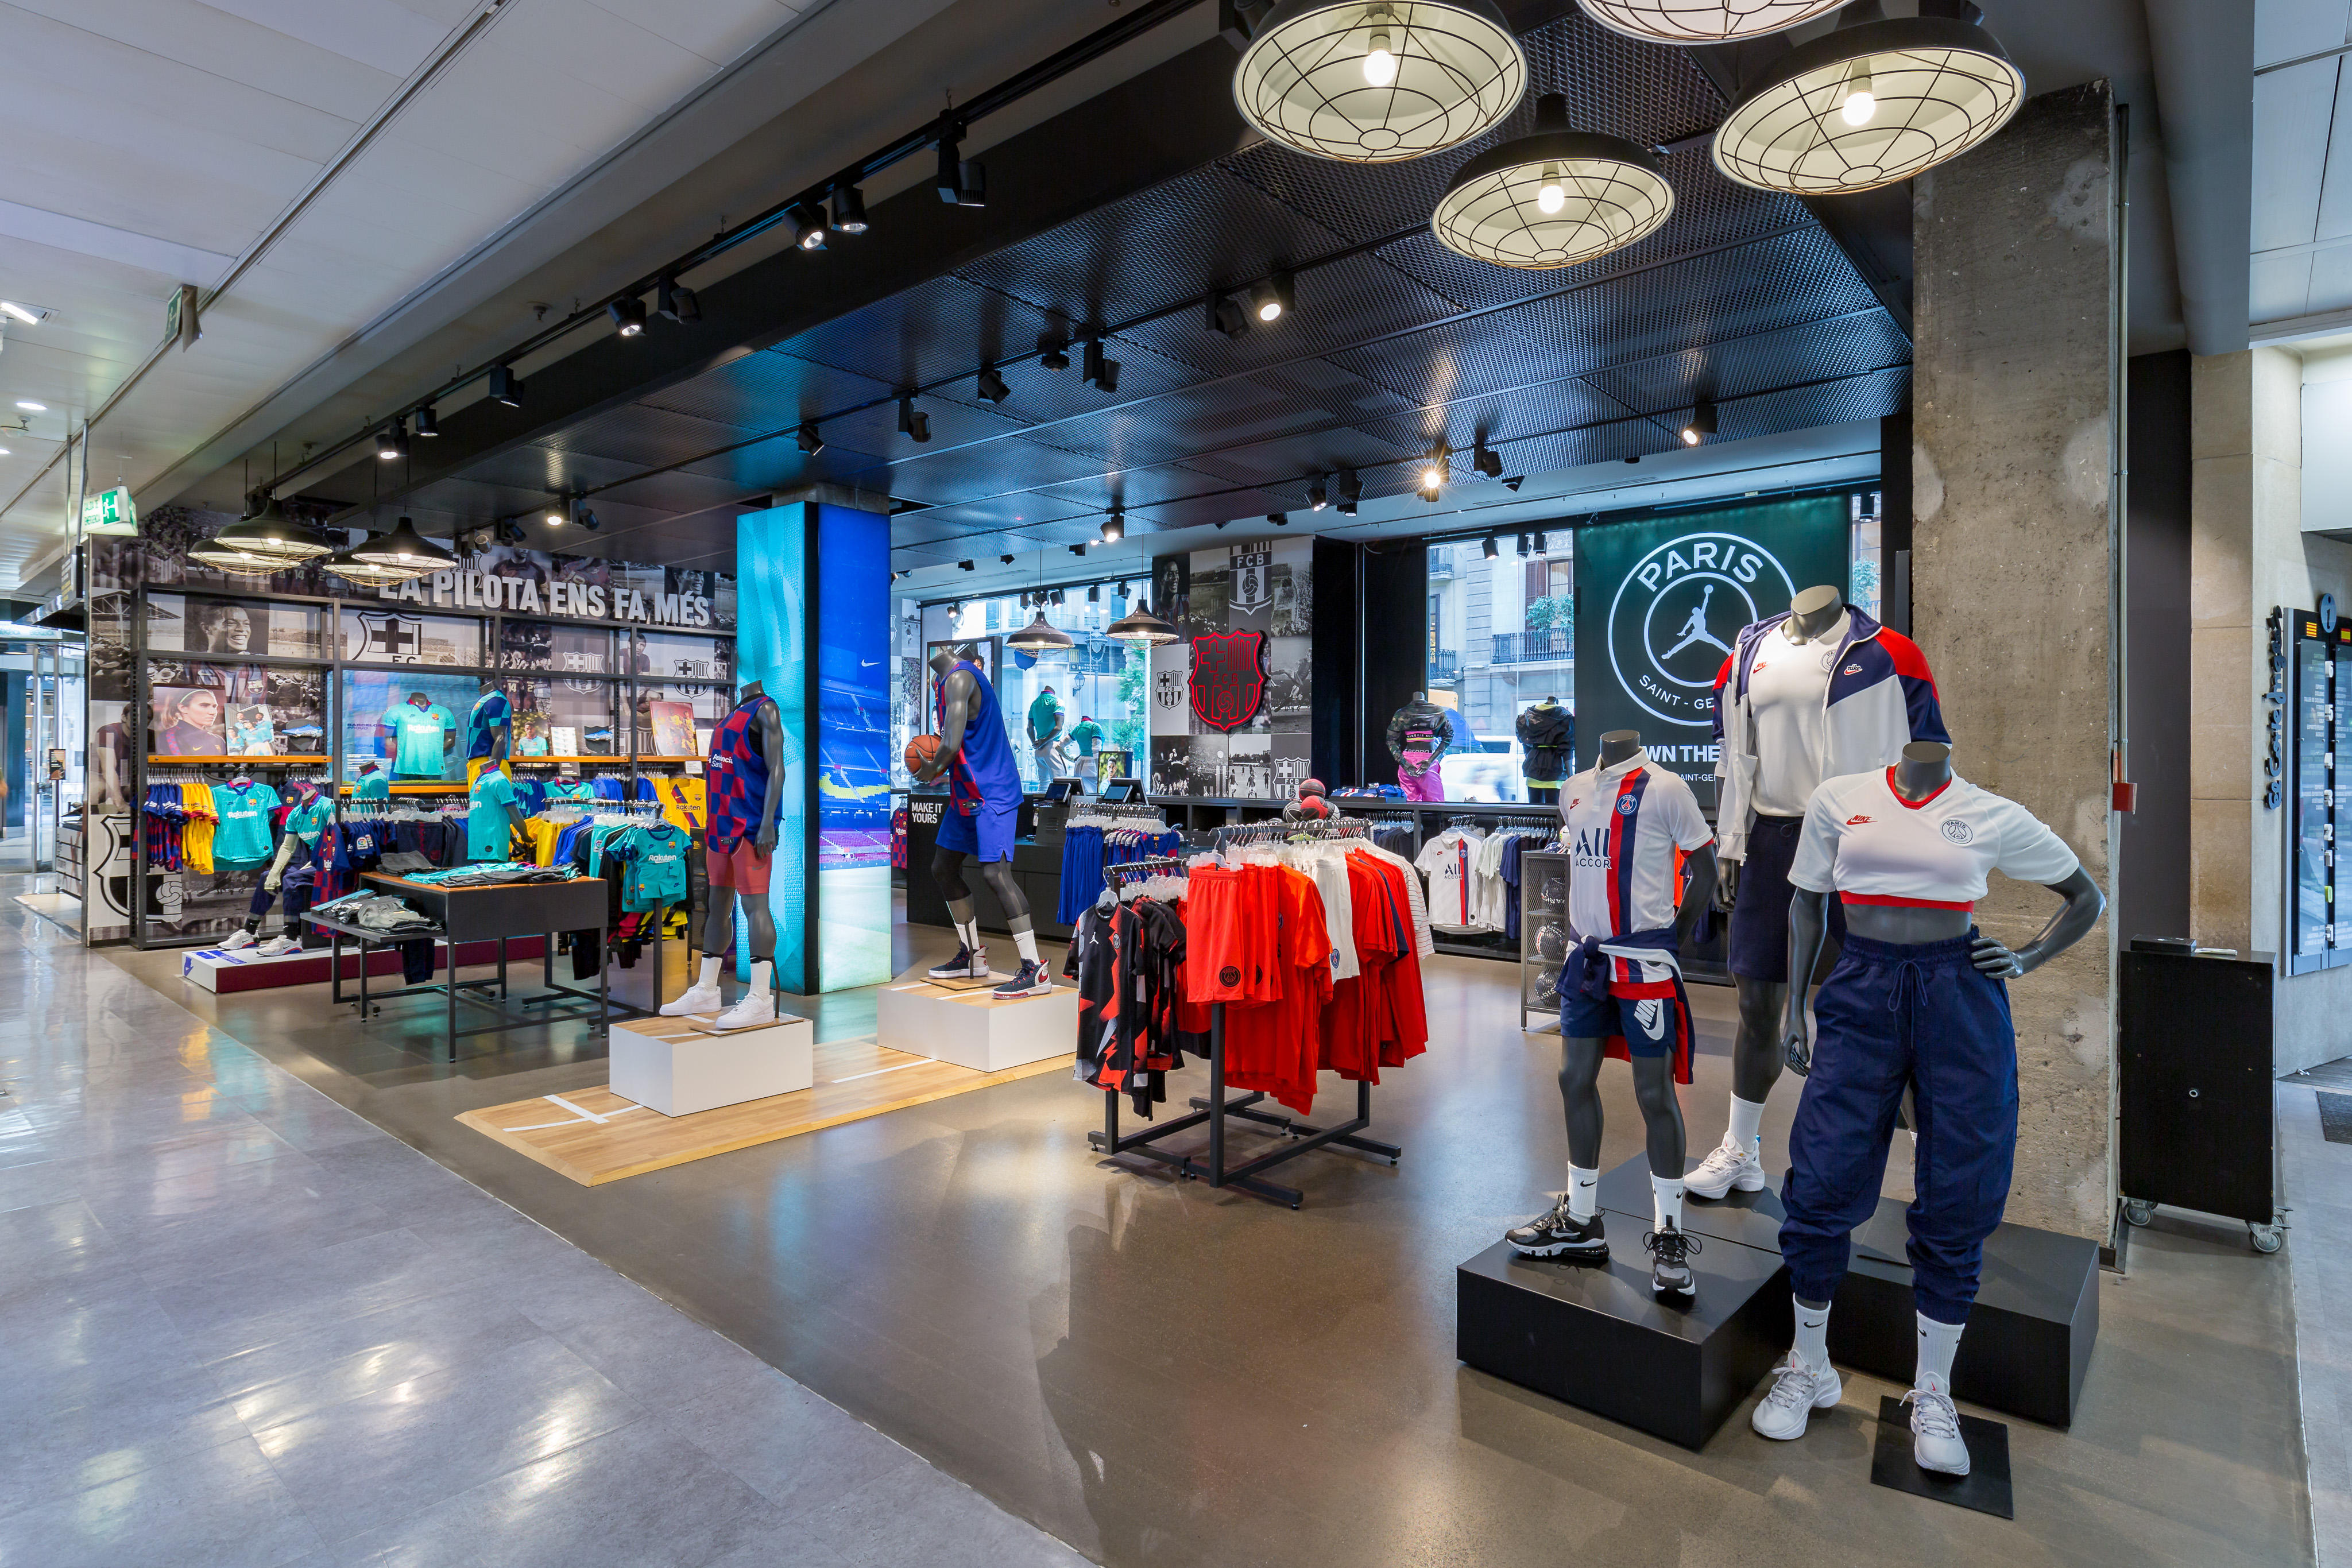 Nike Store Portal de l'Ángel - Y Ocio: Y Ropas (Al Por Menor Y Accesorios) en Barcelona (dirección, horarios, opiniones, TEL: 933041...) - Infobel